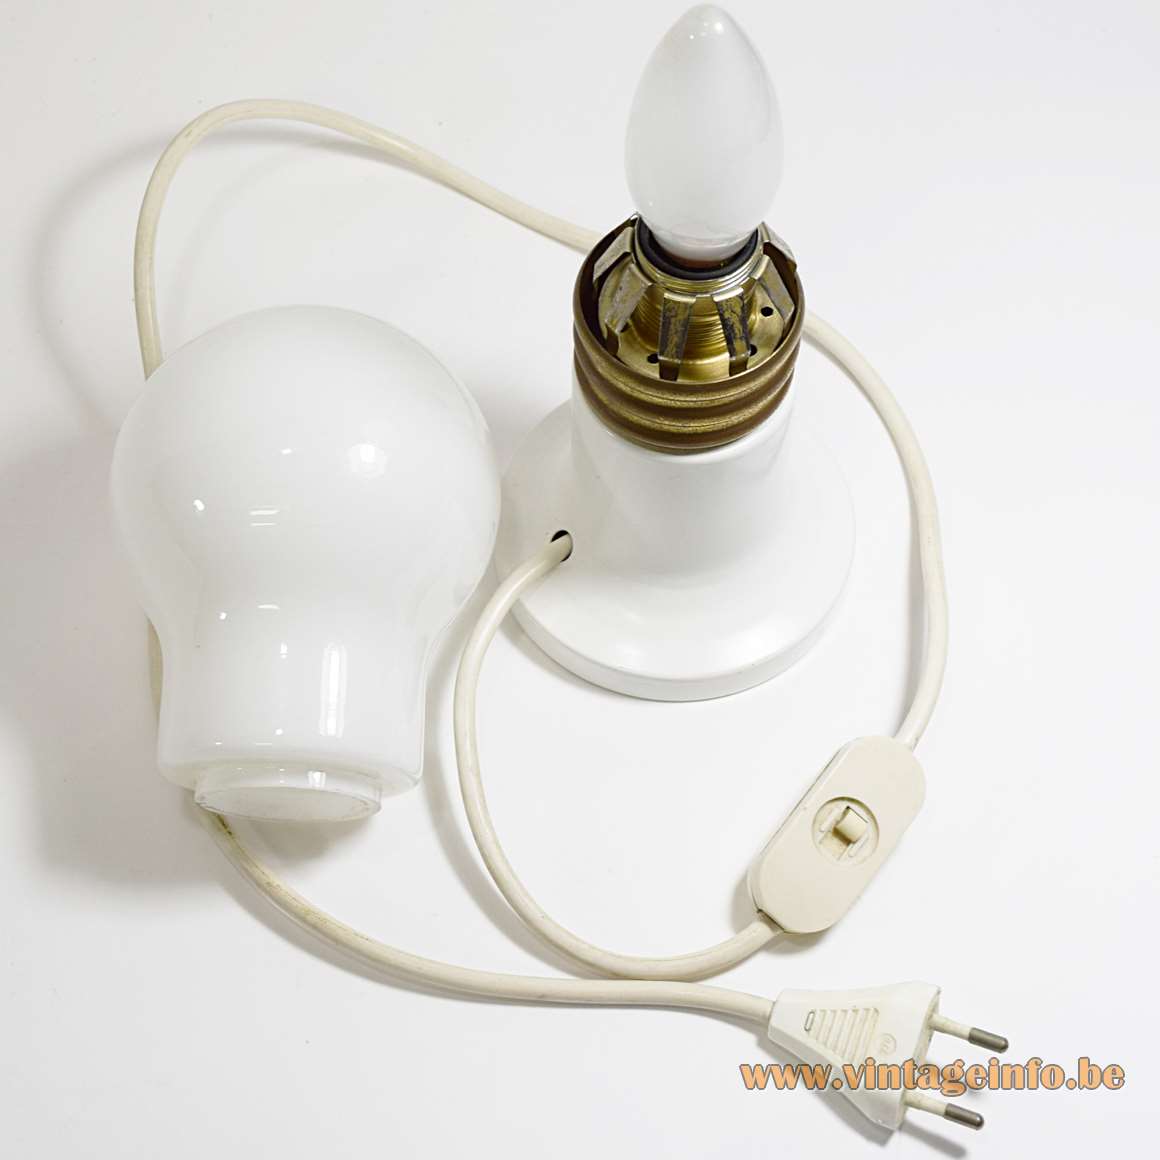 Bulb Table Lamp - inside